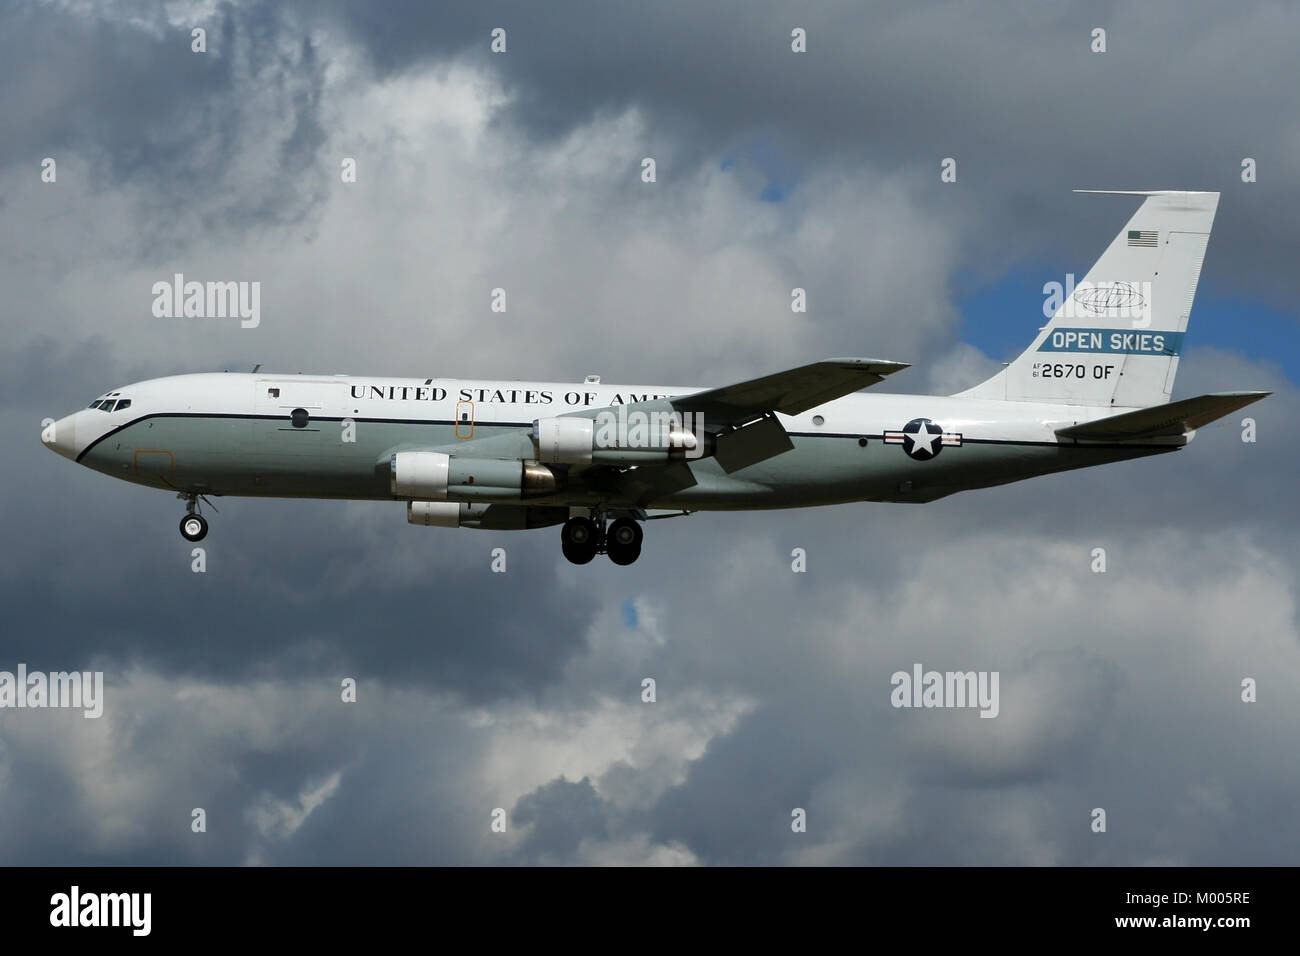 Sbarco nella storia del cielo, uno dei due convertiti OC-135's azionato dalla forza aerea degli Stati Uniti per i Cieli Aperti trattato arriva a Mildenhall. Foto Stock